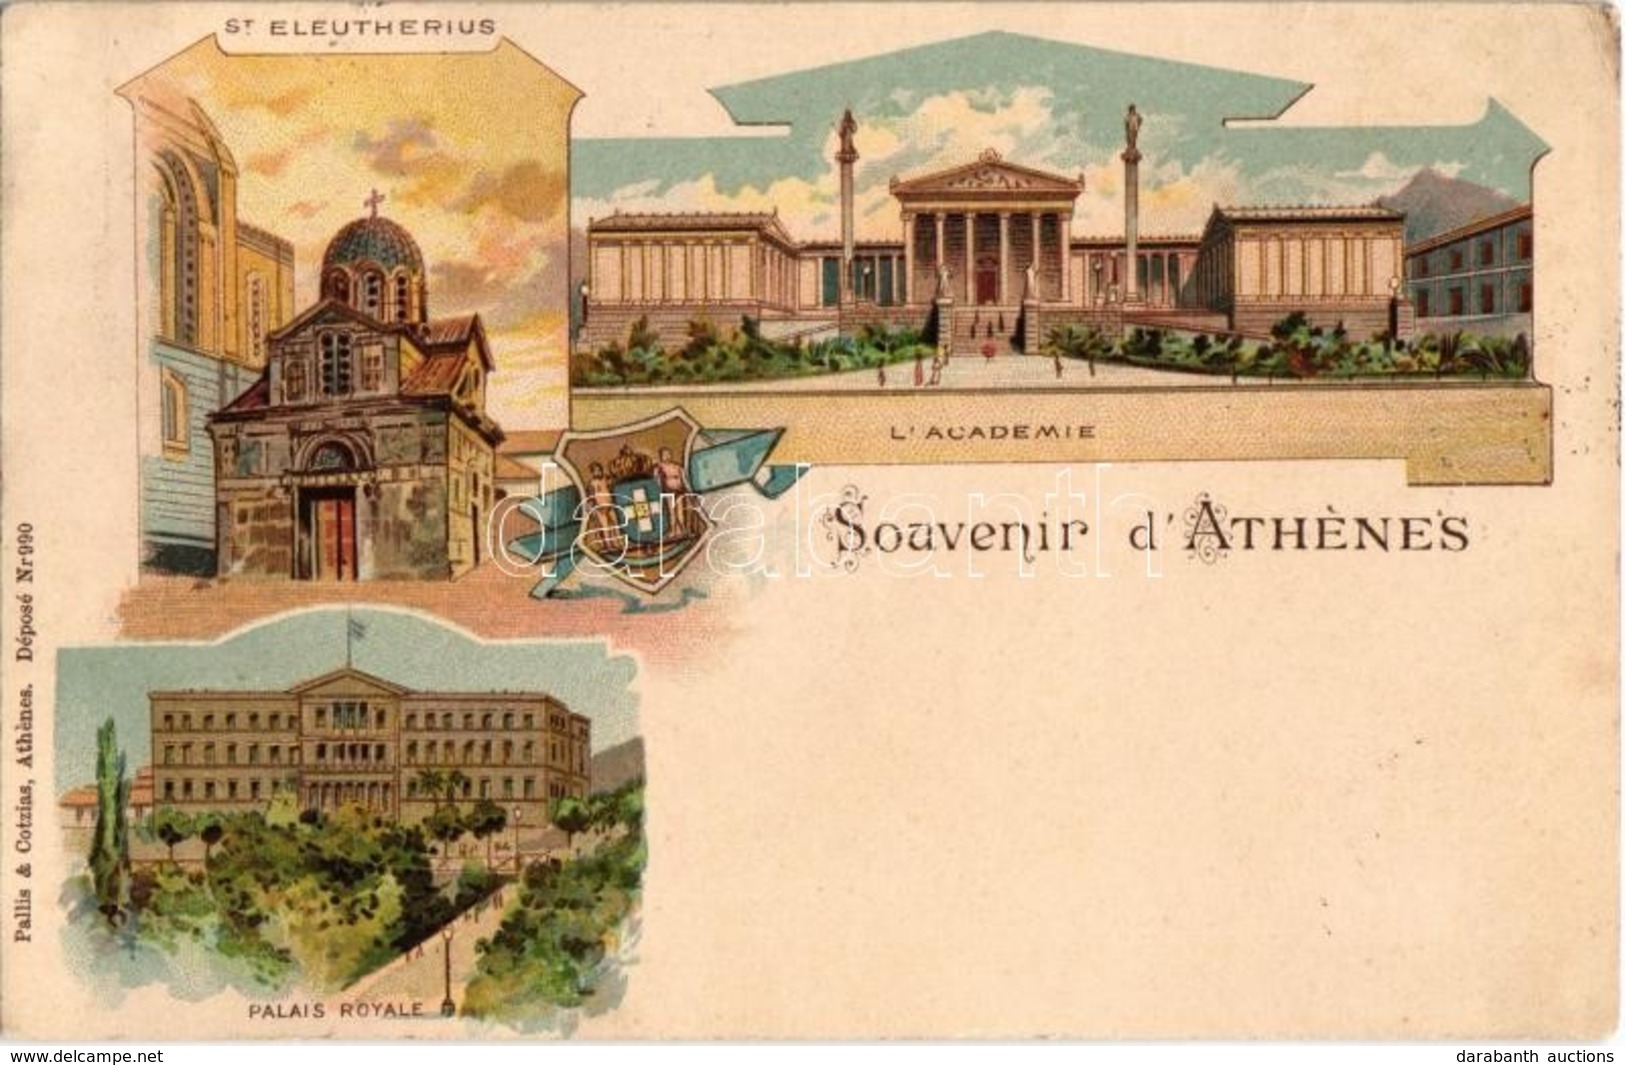 T2/T3 1899 (Vorläufer!) Athens, Athénes; St. Eleutherius, Palais Royale, L'Academie. Pallis & Cotzias Litho  (EK) - Unclassified